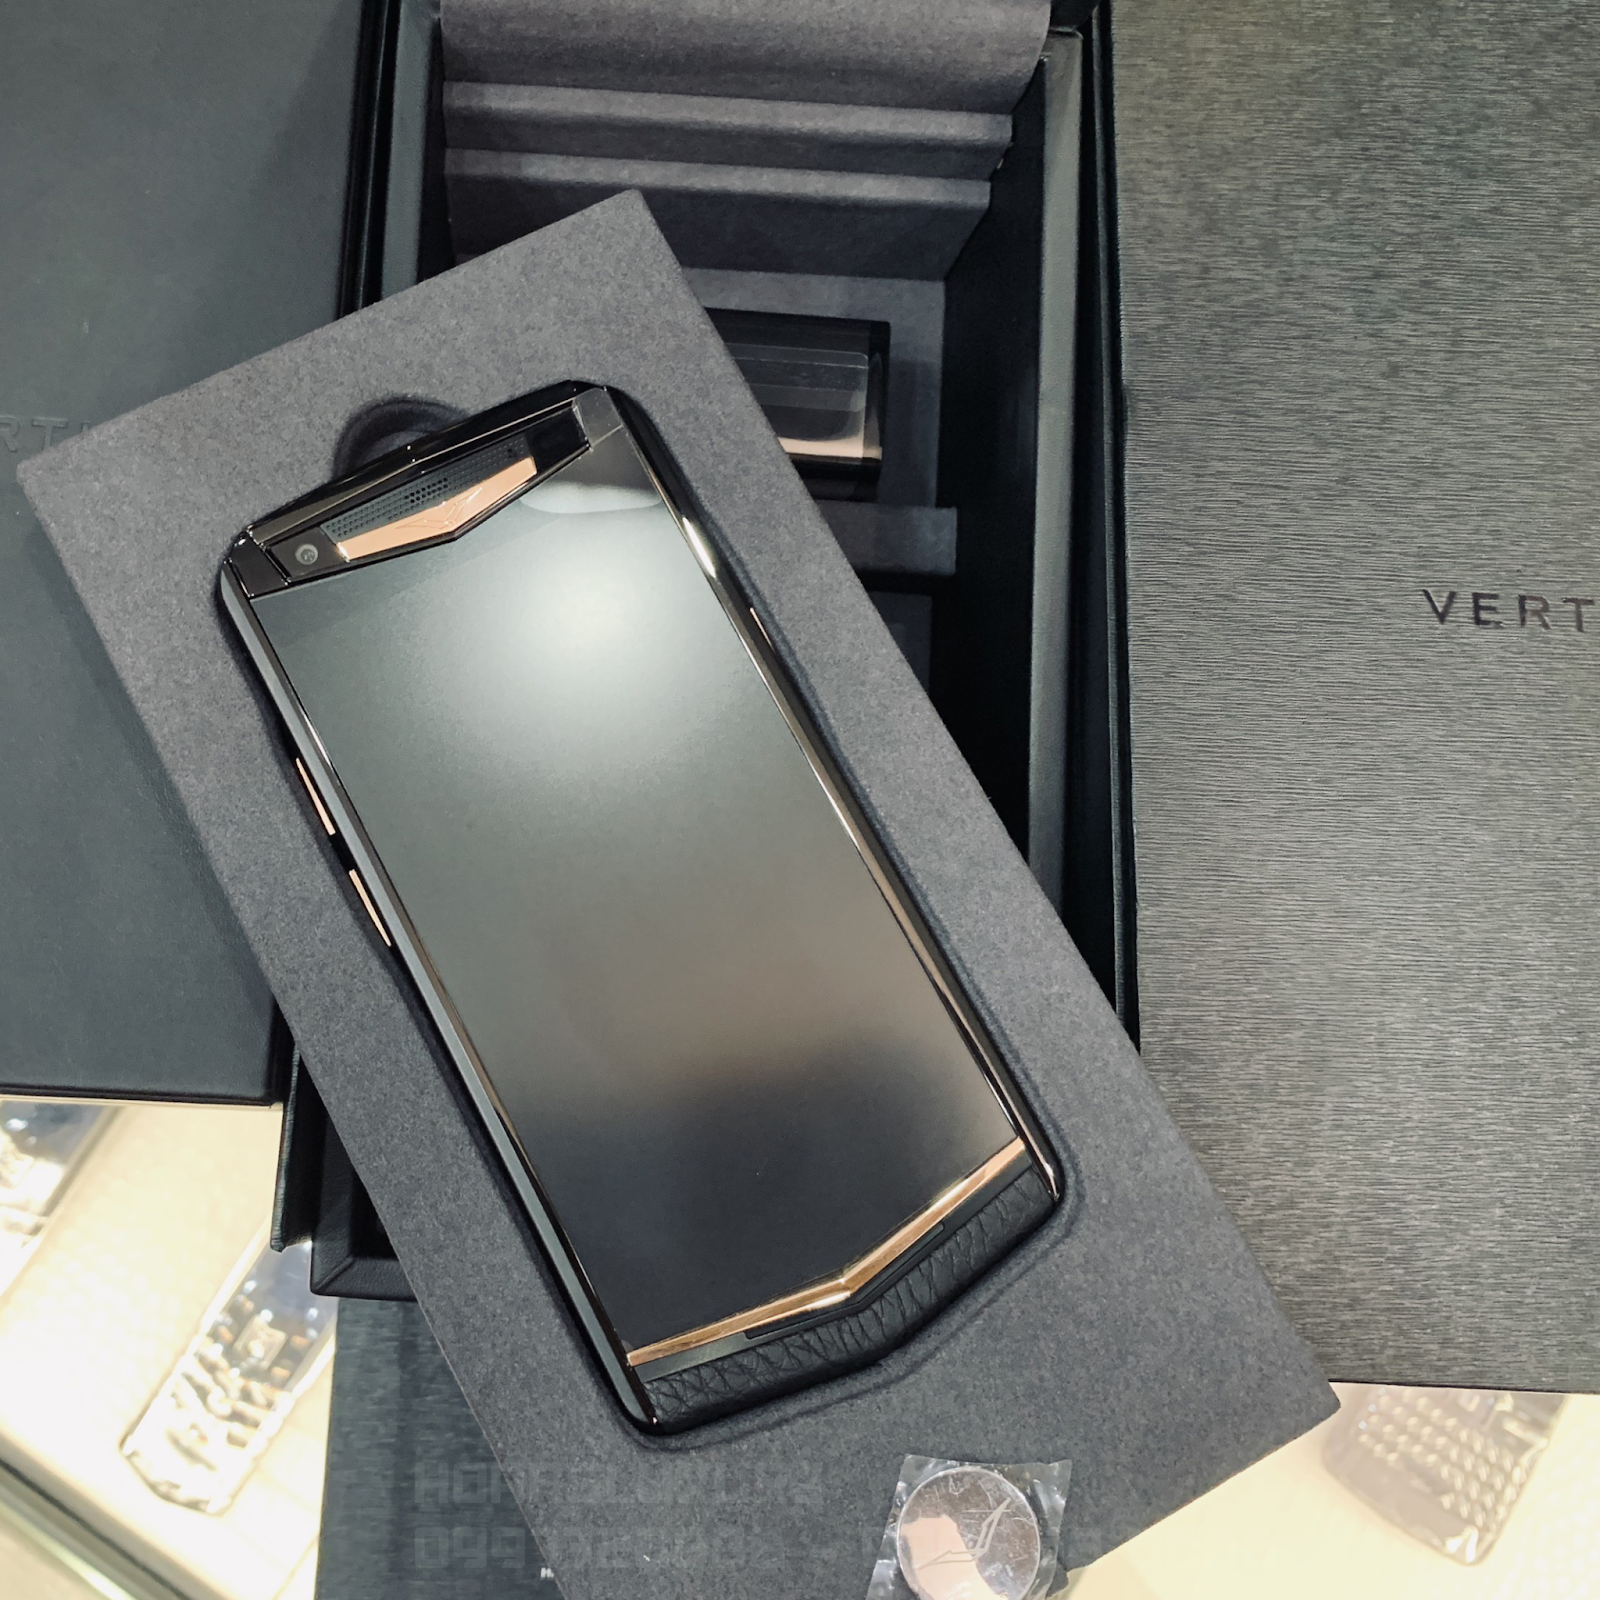 Vertu Aster P Black Mix Gold cao cấp chĩnh hãng tại Hoàng Luxury